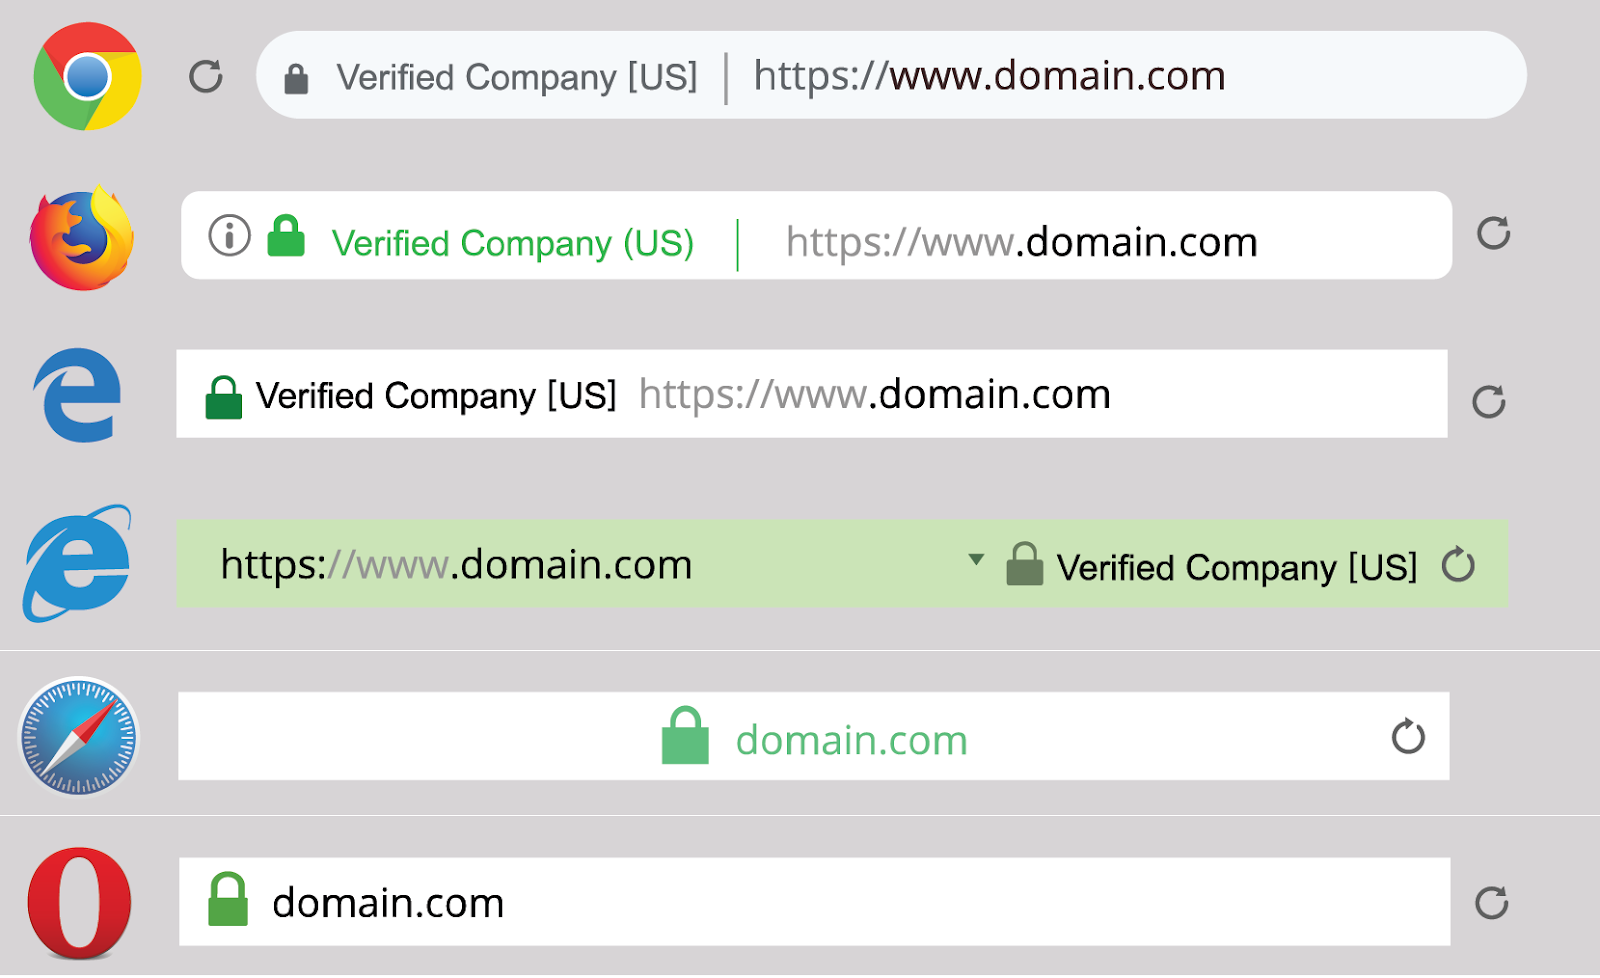 SSL/TLS Certificates